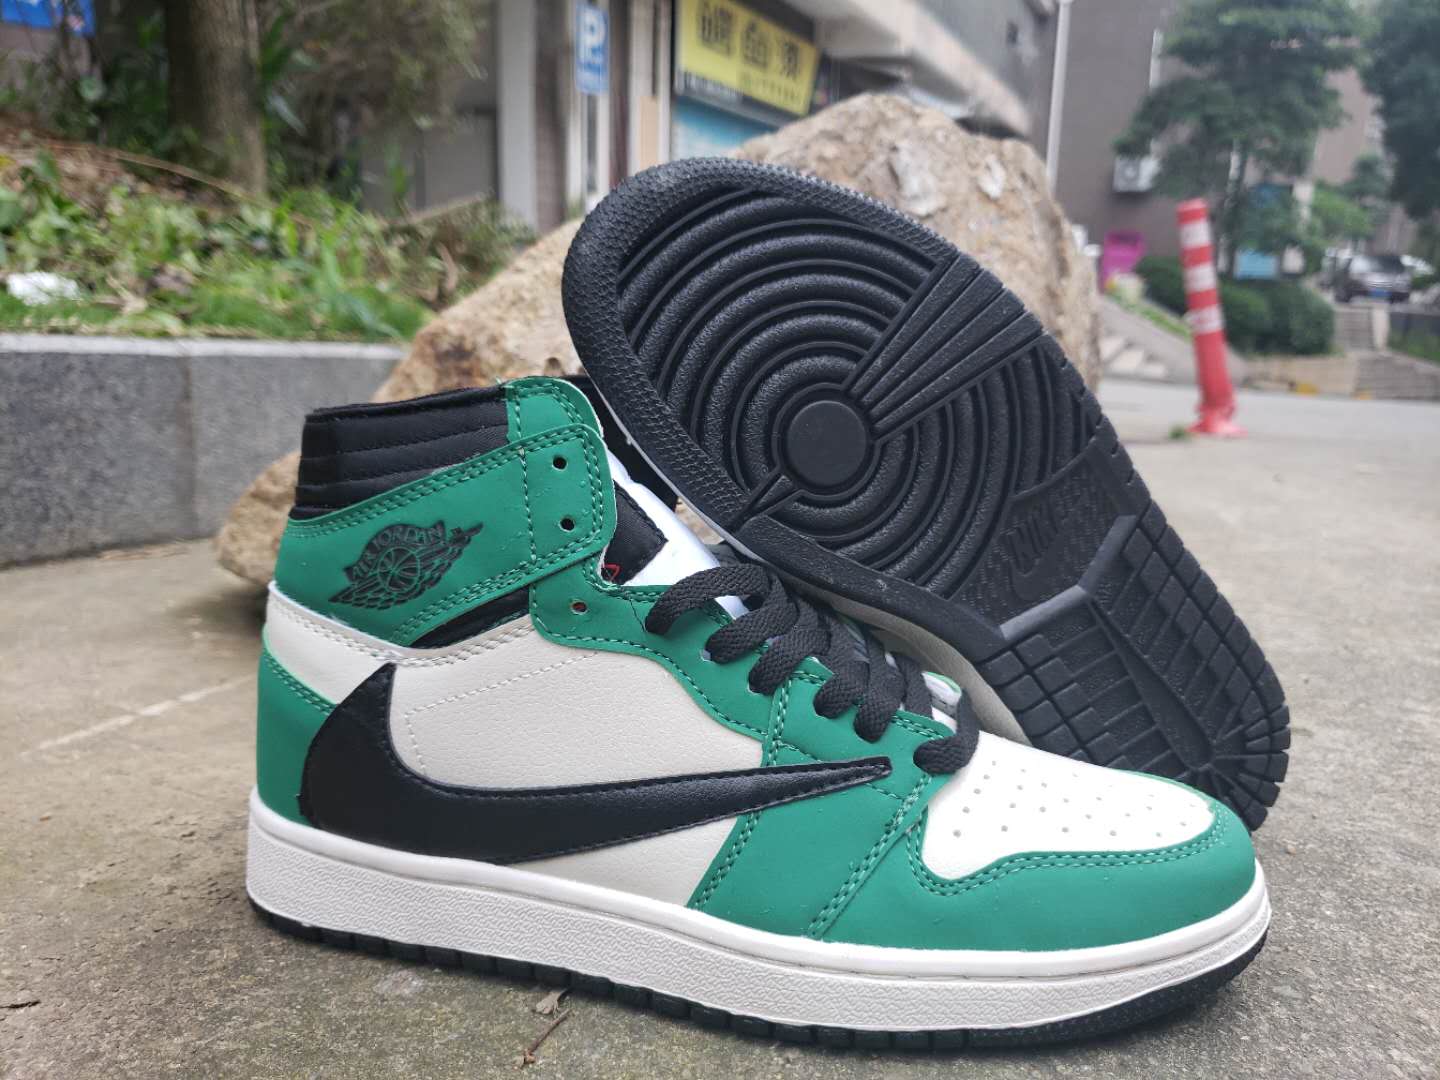 Air Jordan 1 High OG TS SP Green Black White Shoes